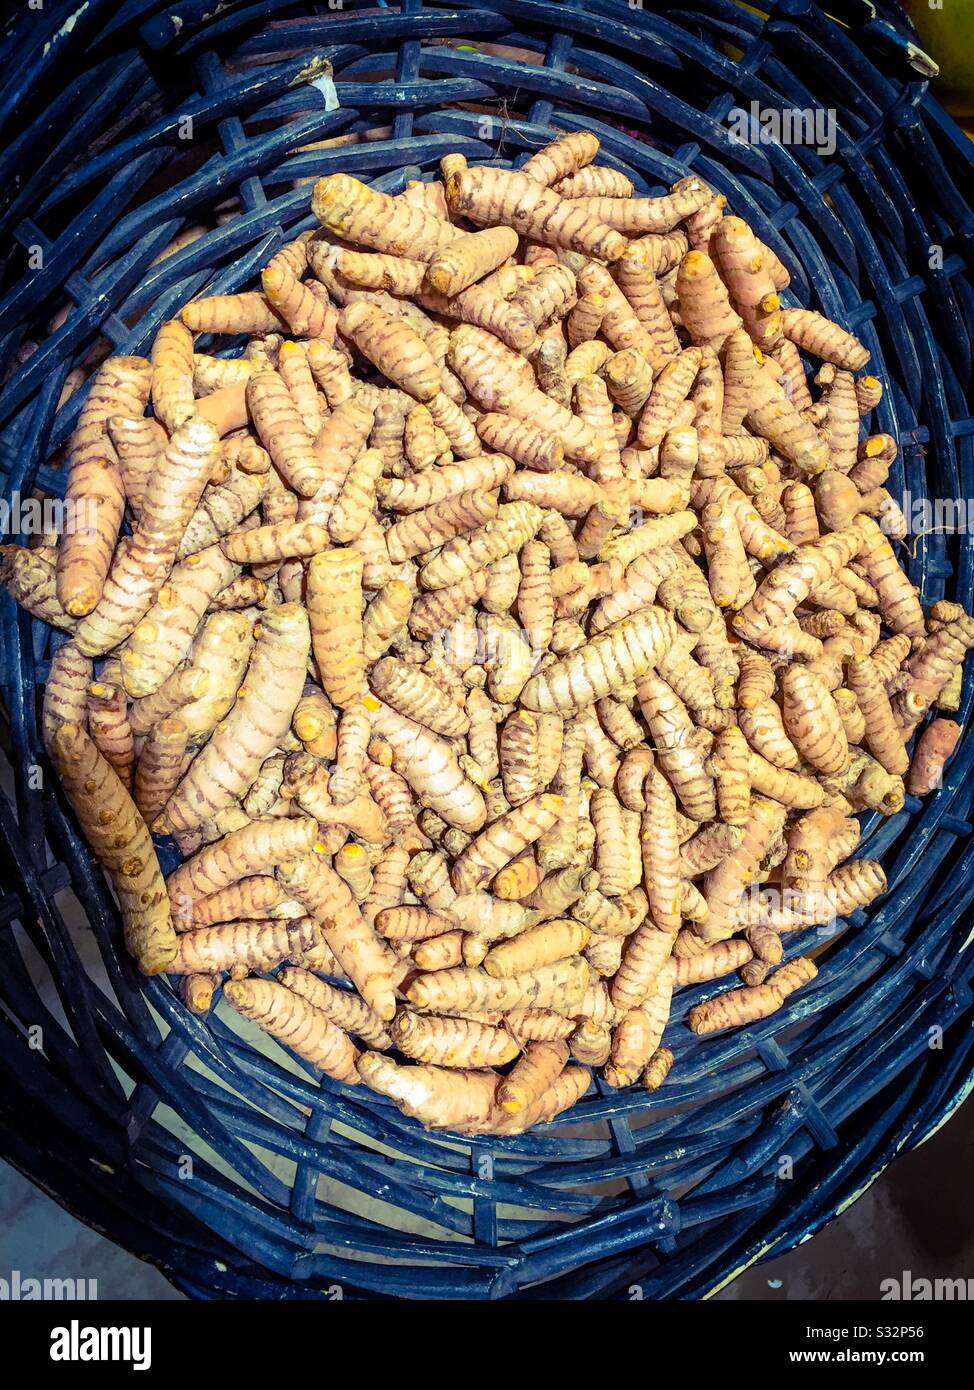 Organic turmeric in a basket Stock Photo